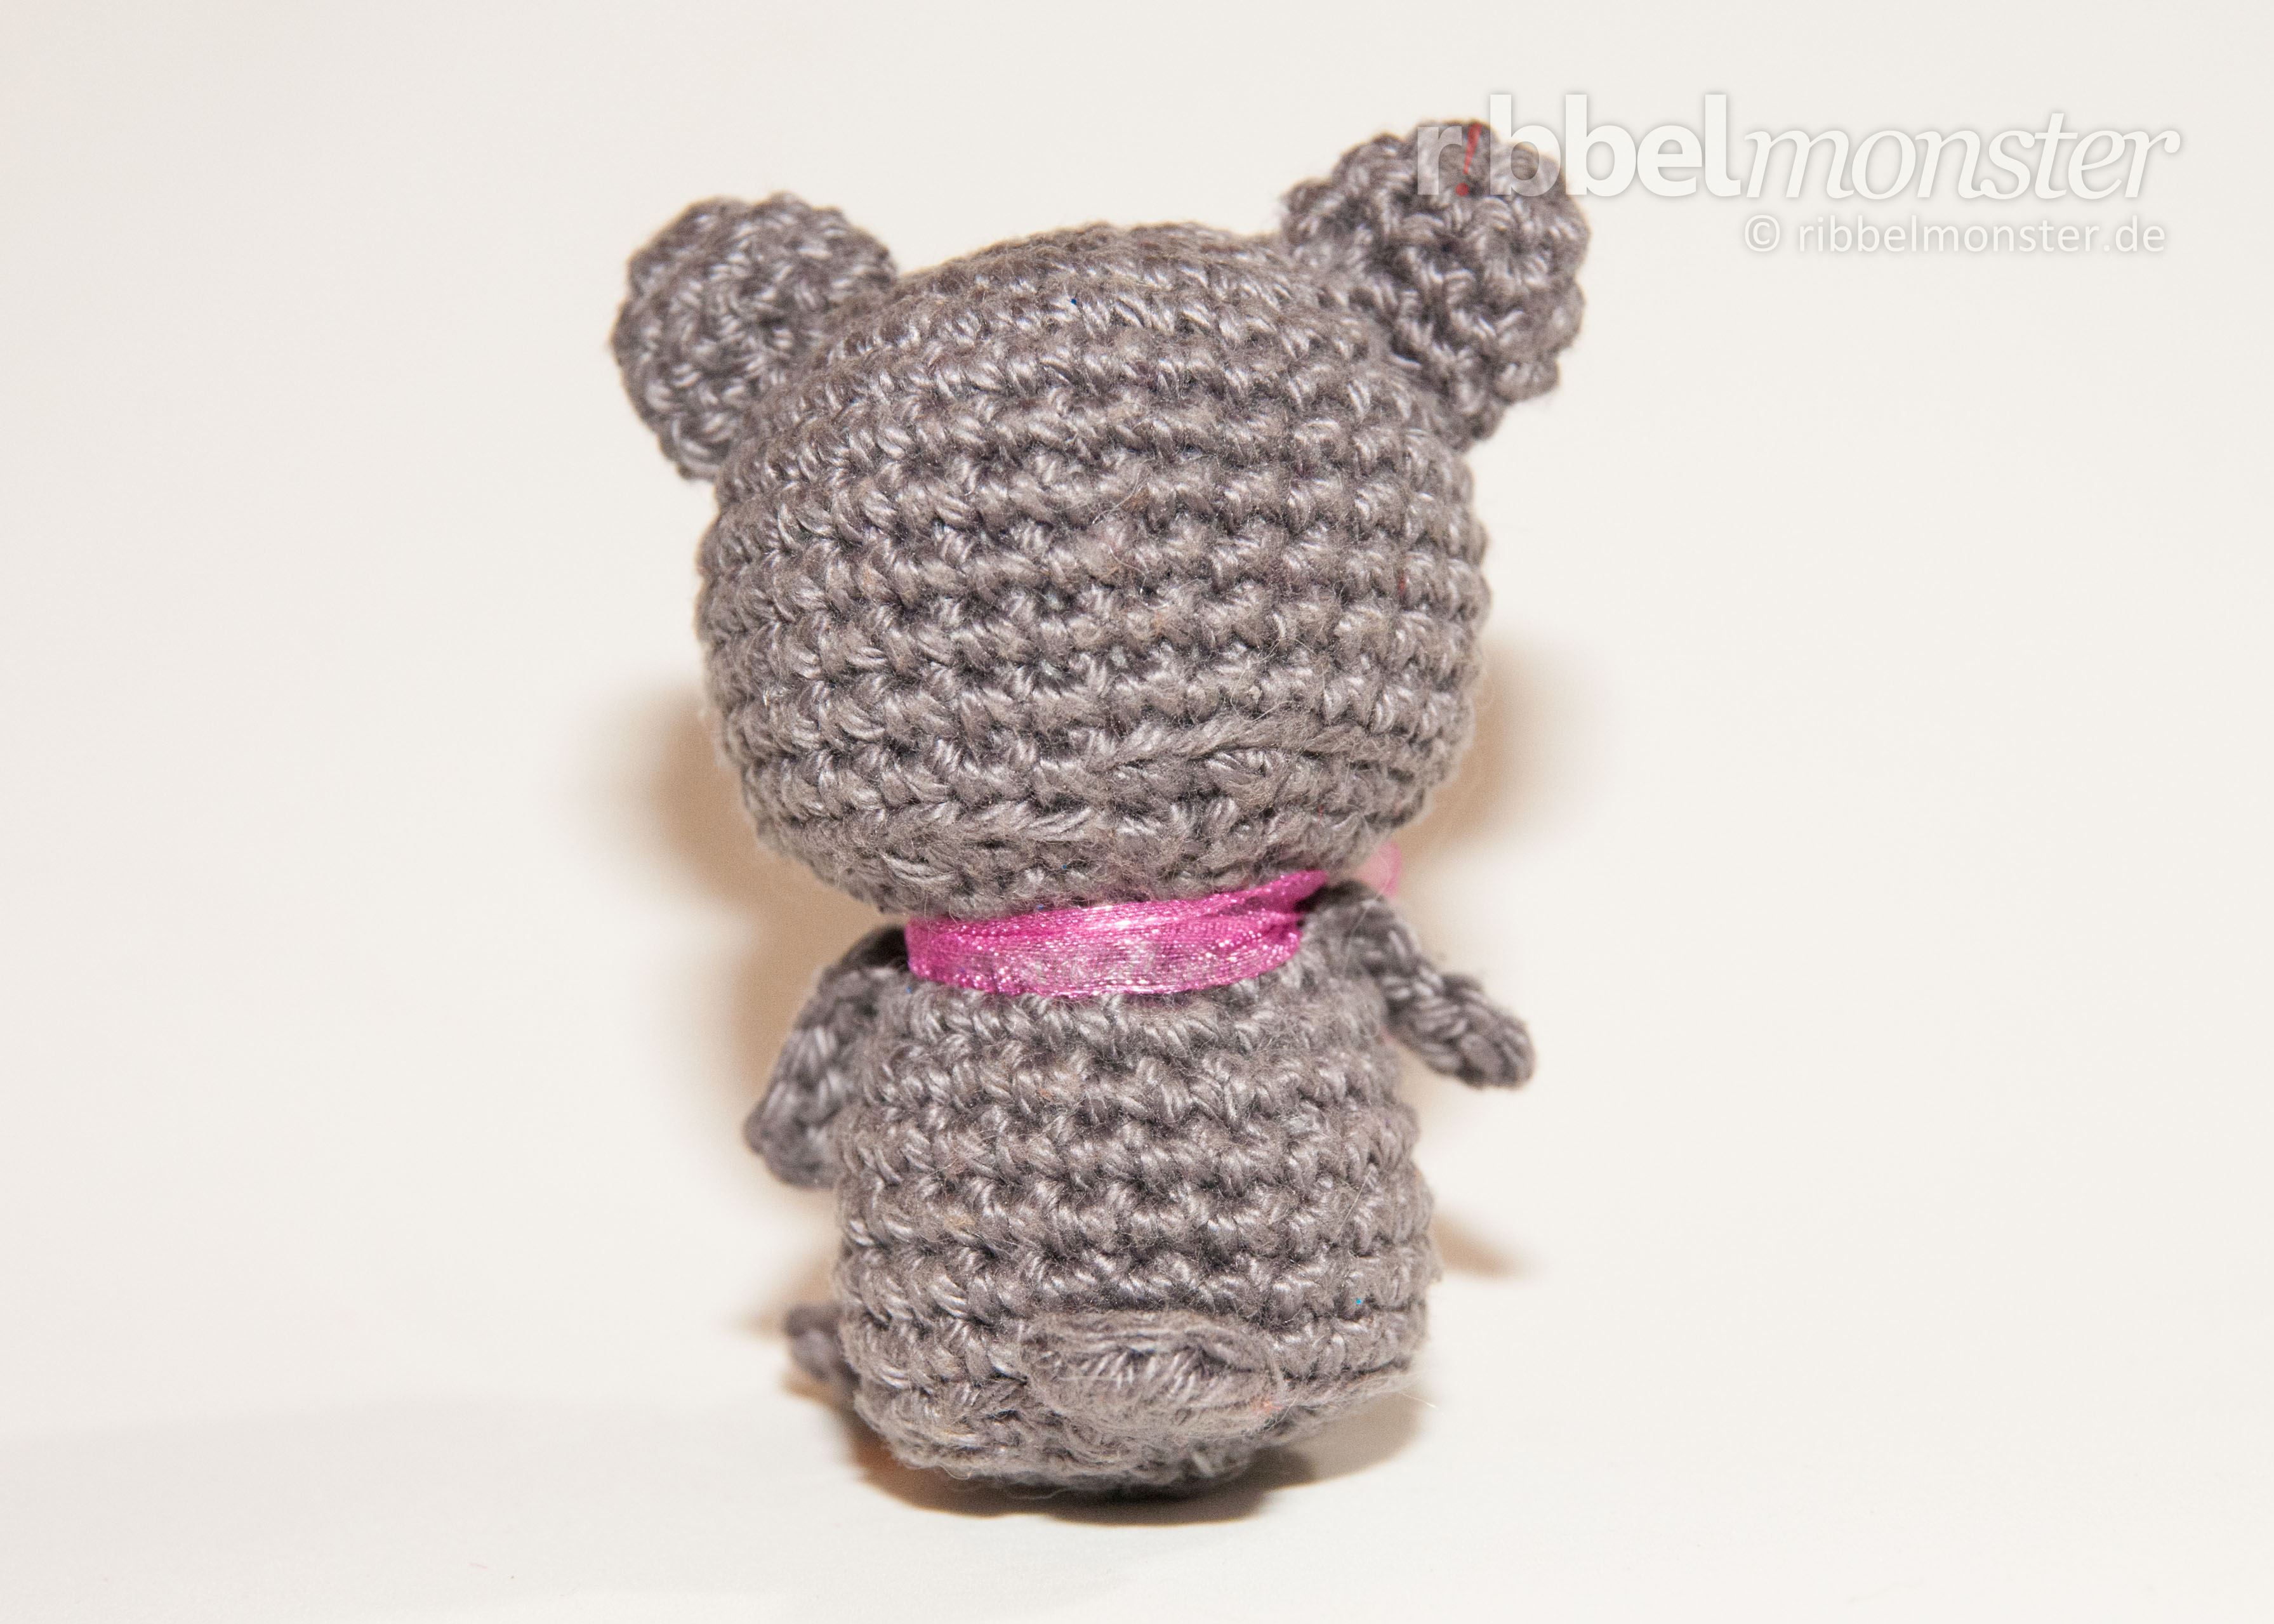 Amigurumi - Minimee Crochet Koala Bear - Sina - crochet pattern - free pattern